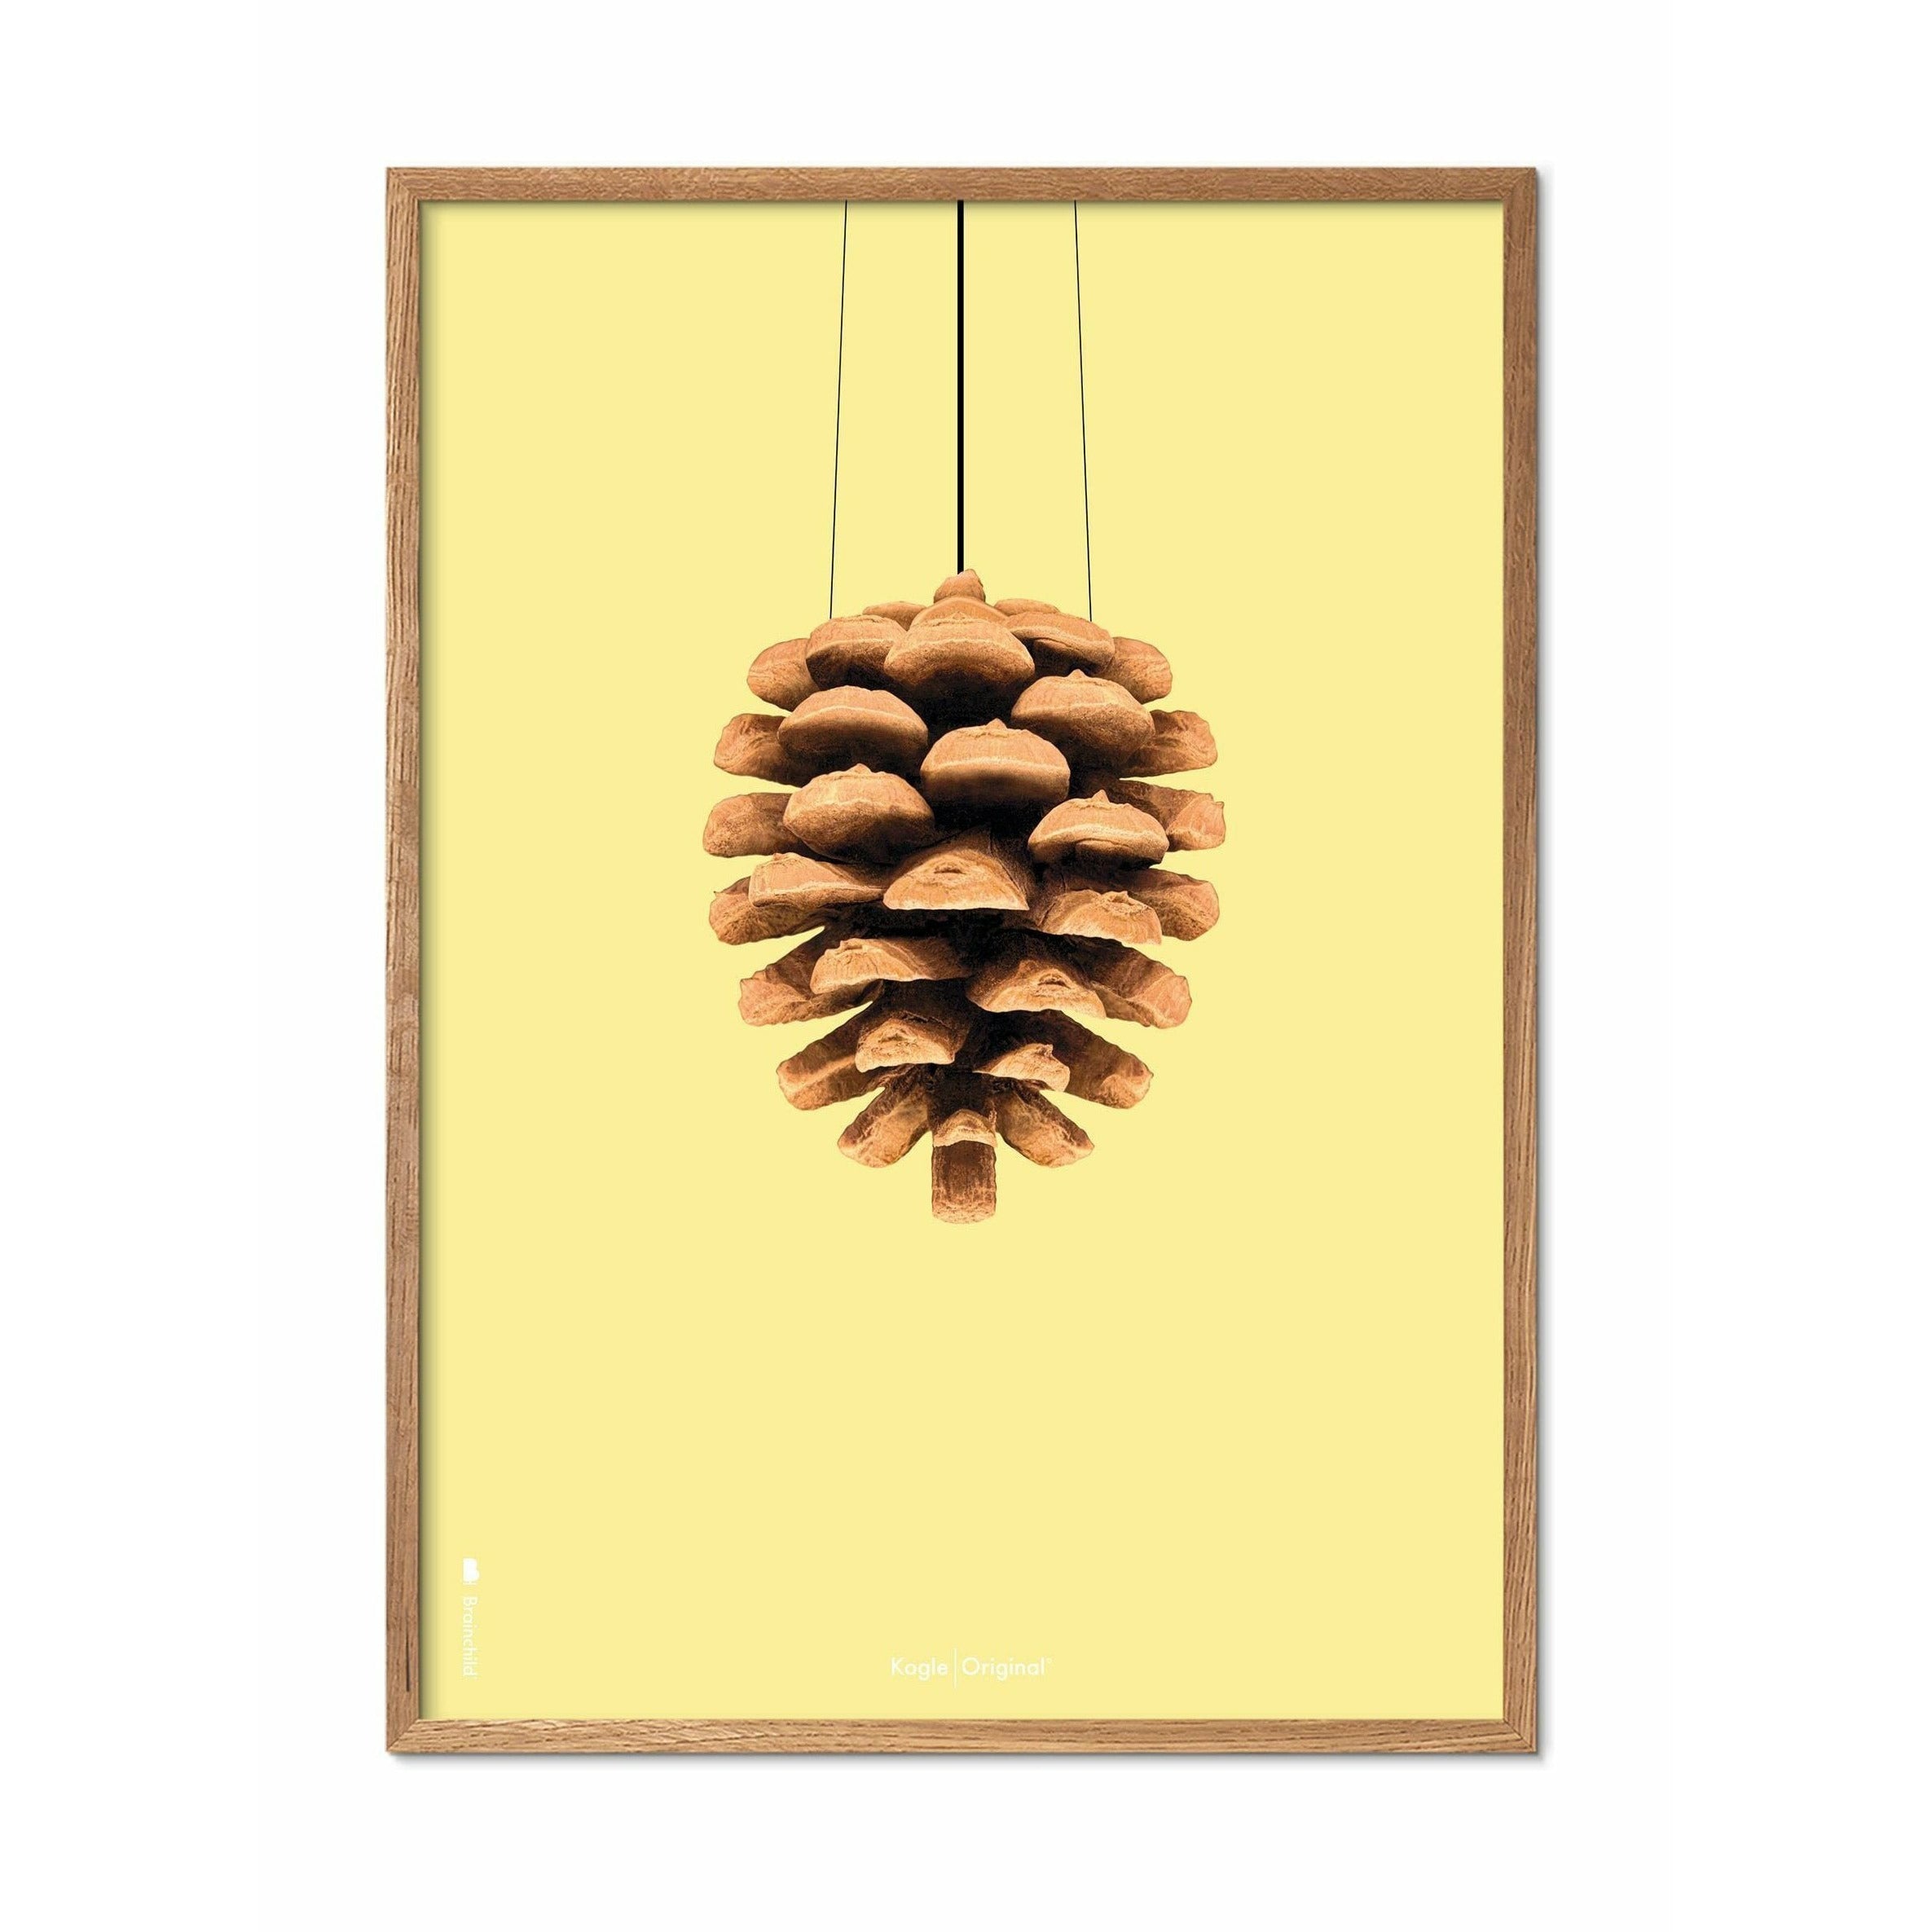 Póster clásico de cono de pino de creación, marco hecho de madera clara de 30x40 cm, fondo amarillo